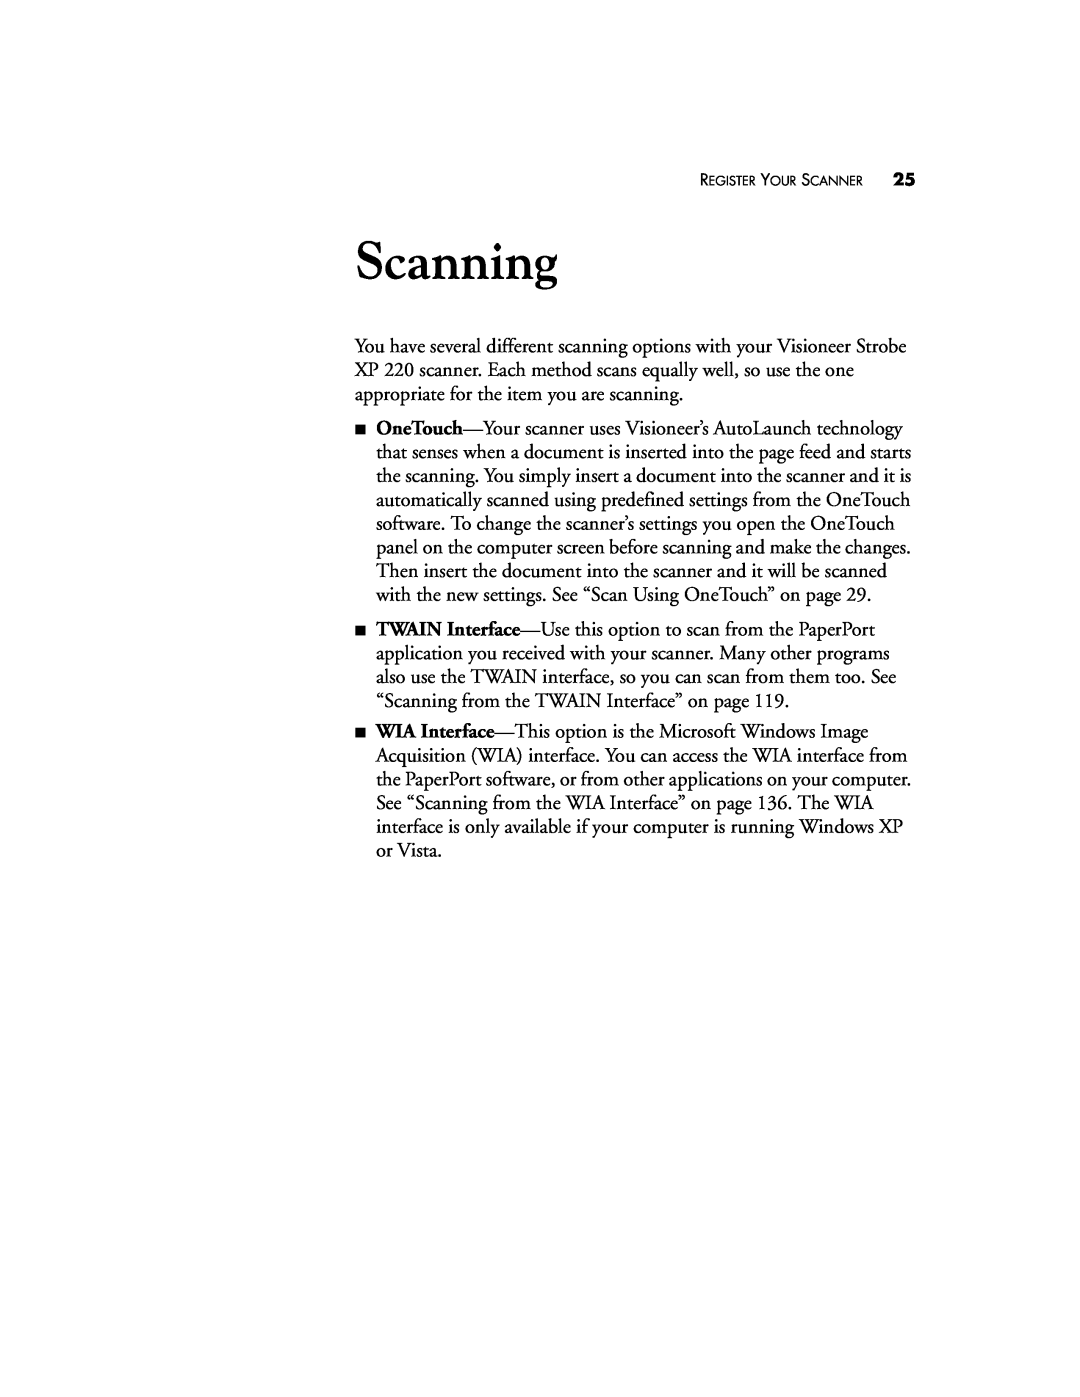 Visioneer XP220 manual Scanning, Register Your Scanner 